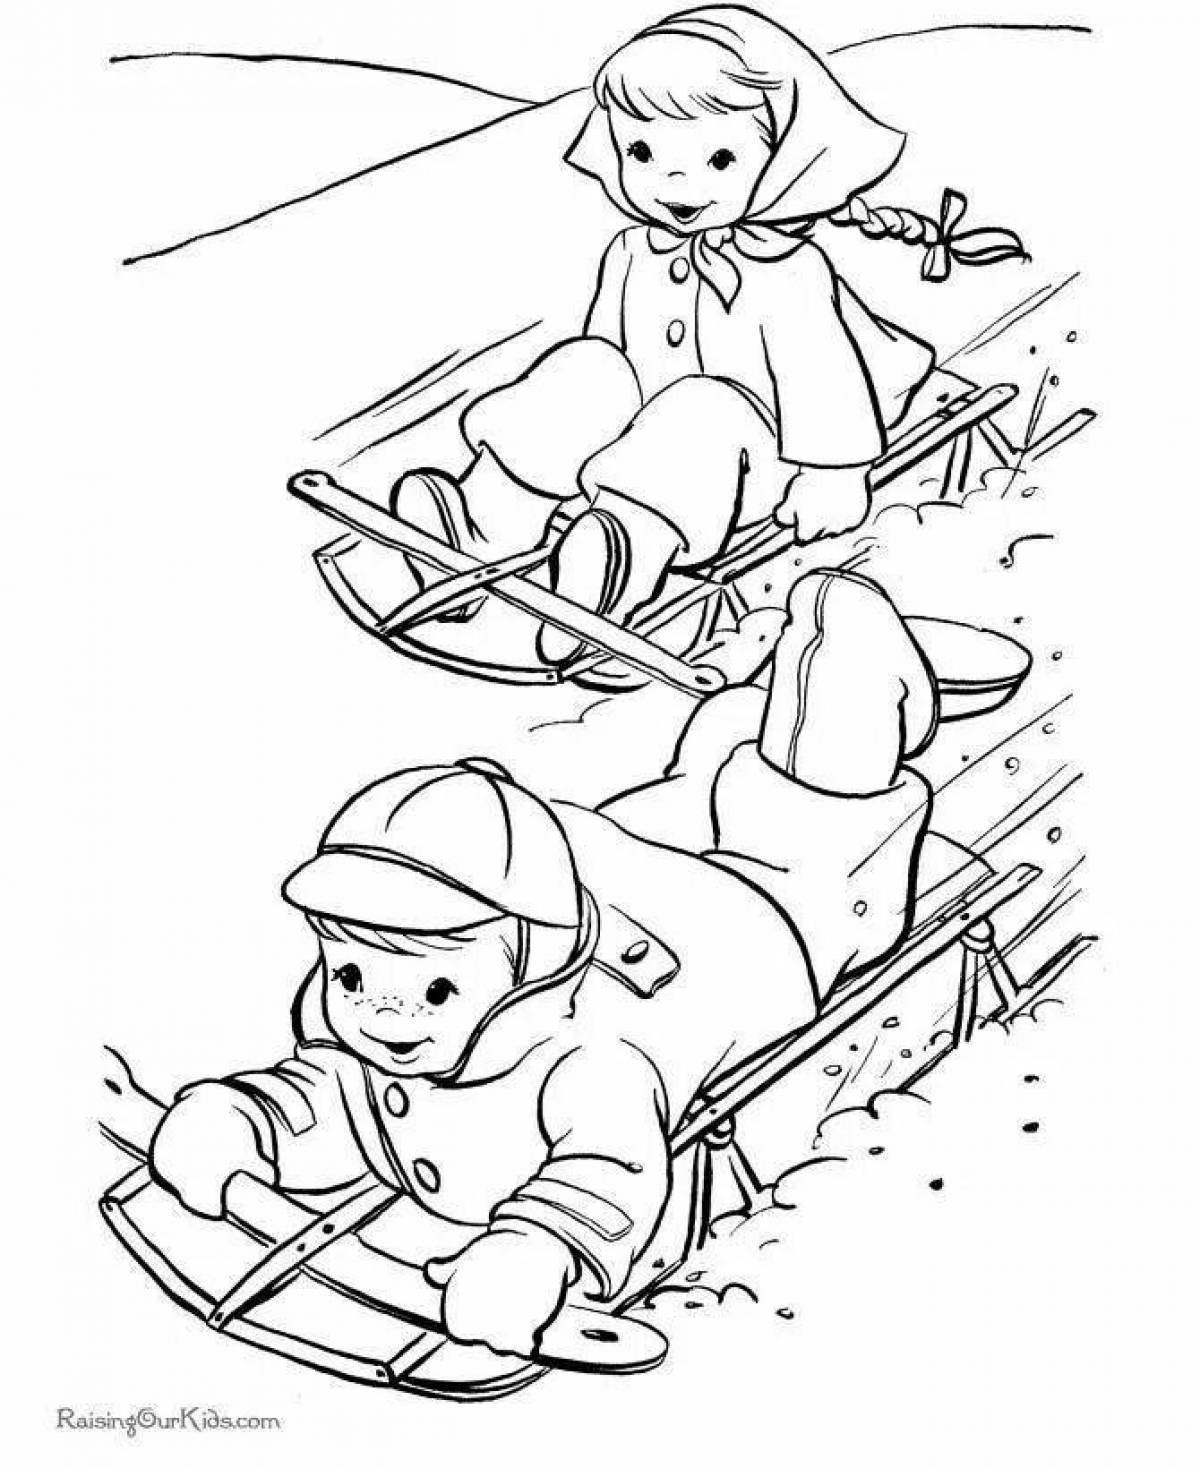 Children sledding #3